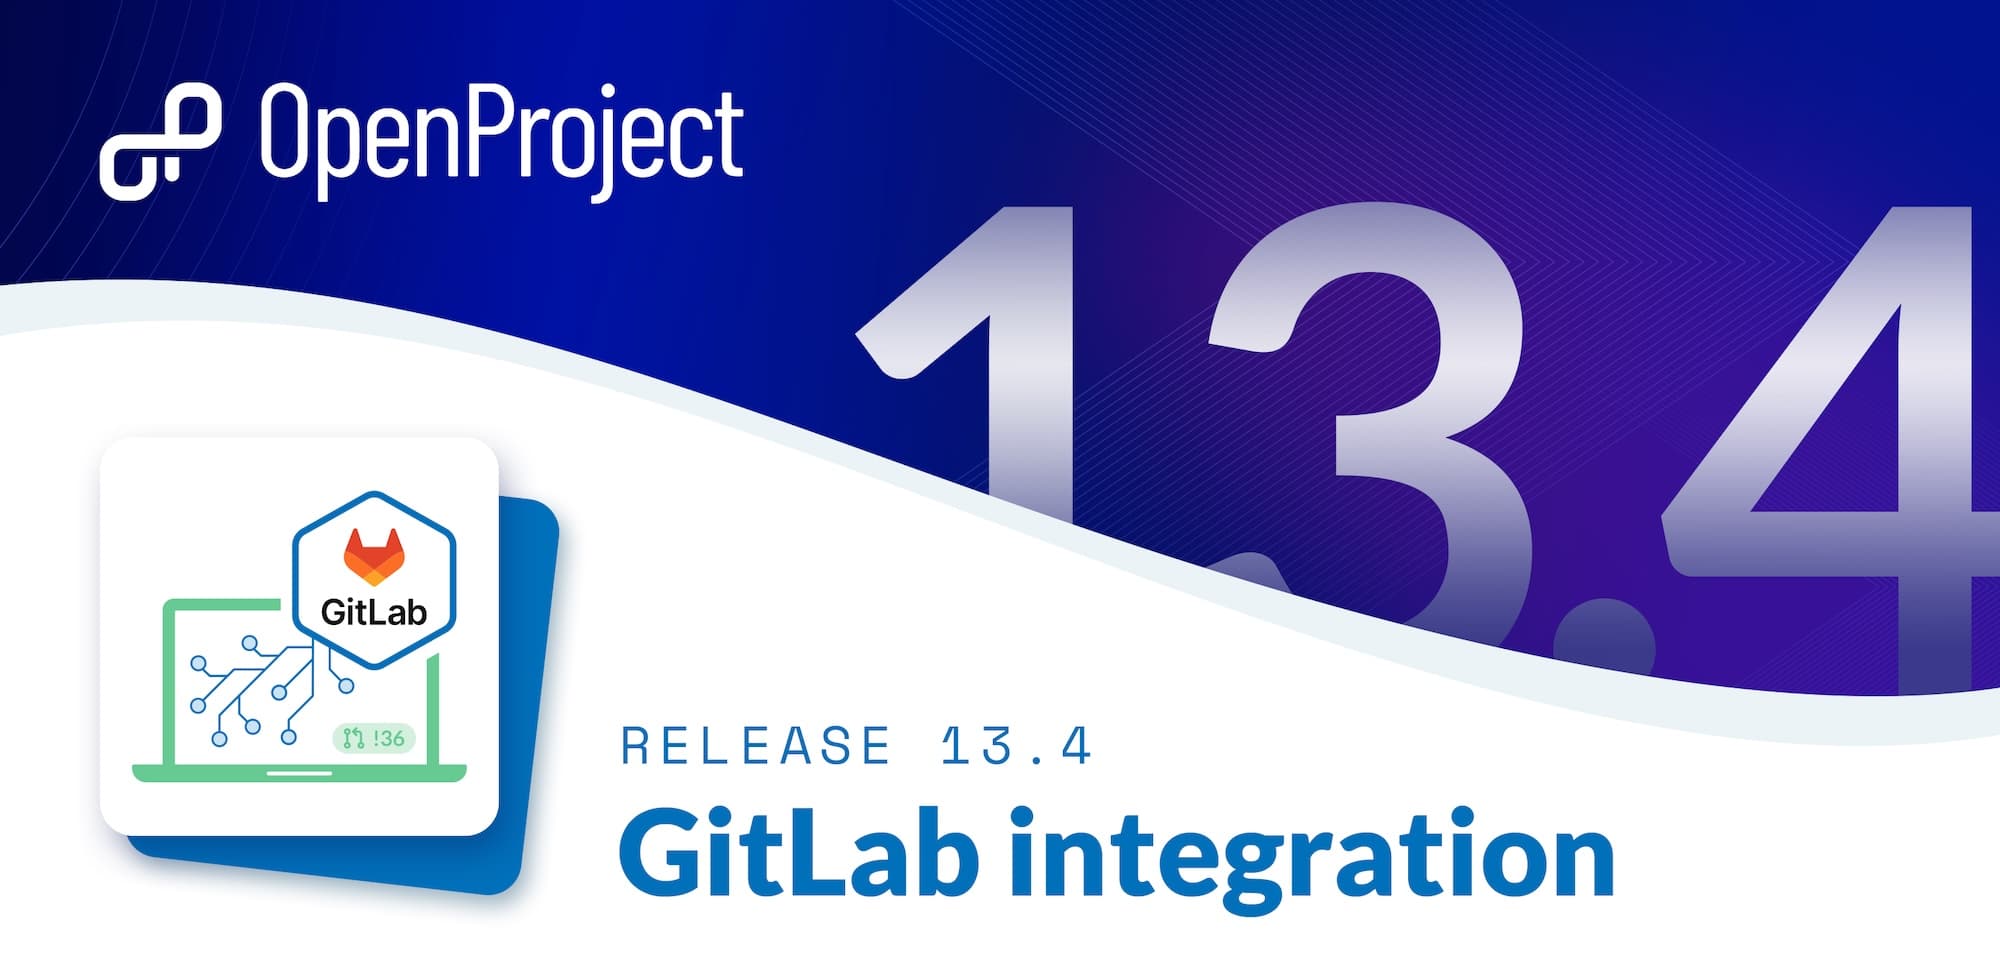 OpenProject Release 13.4